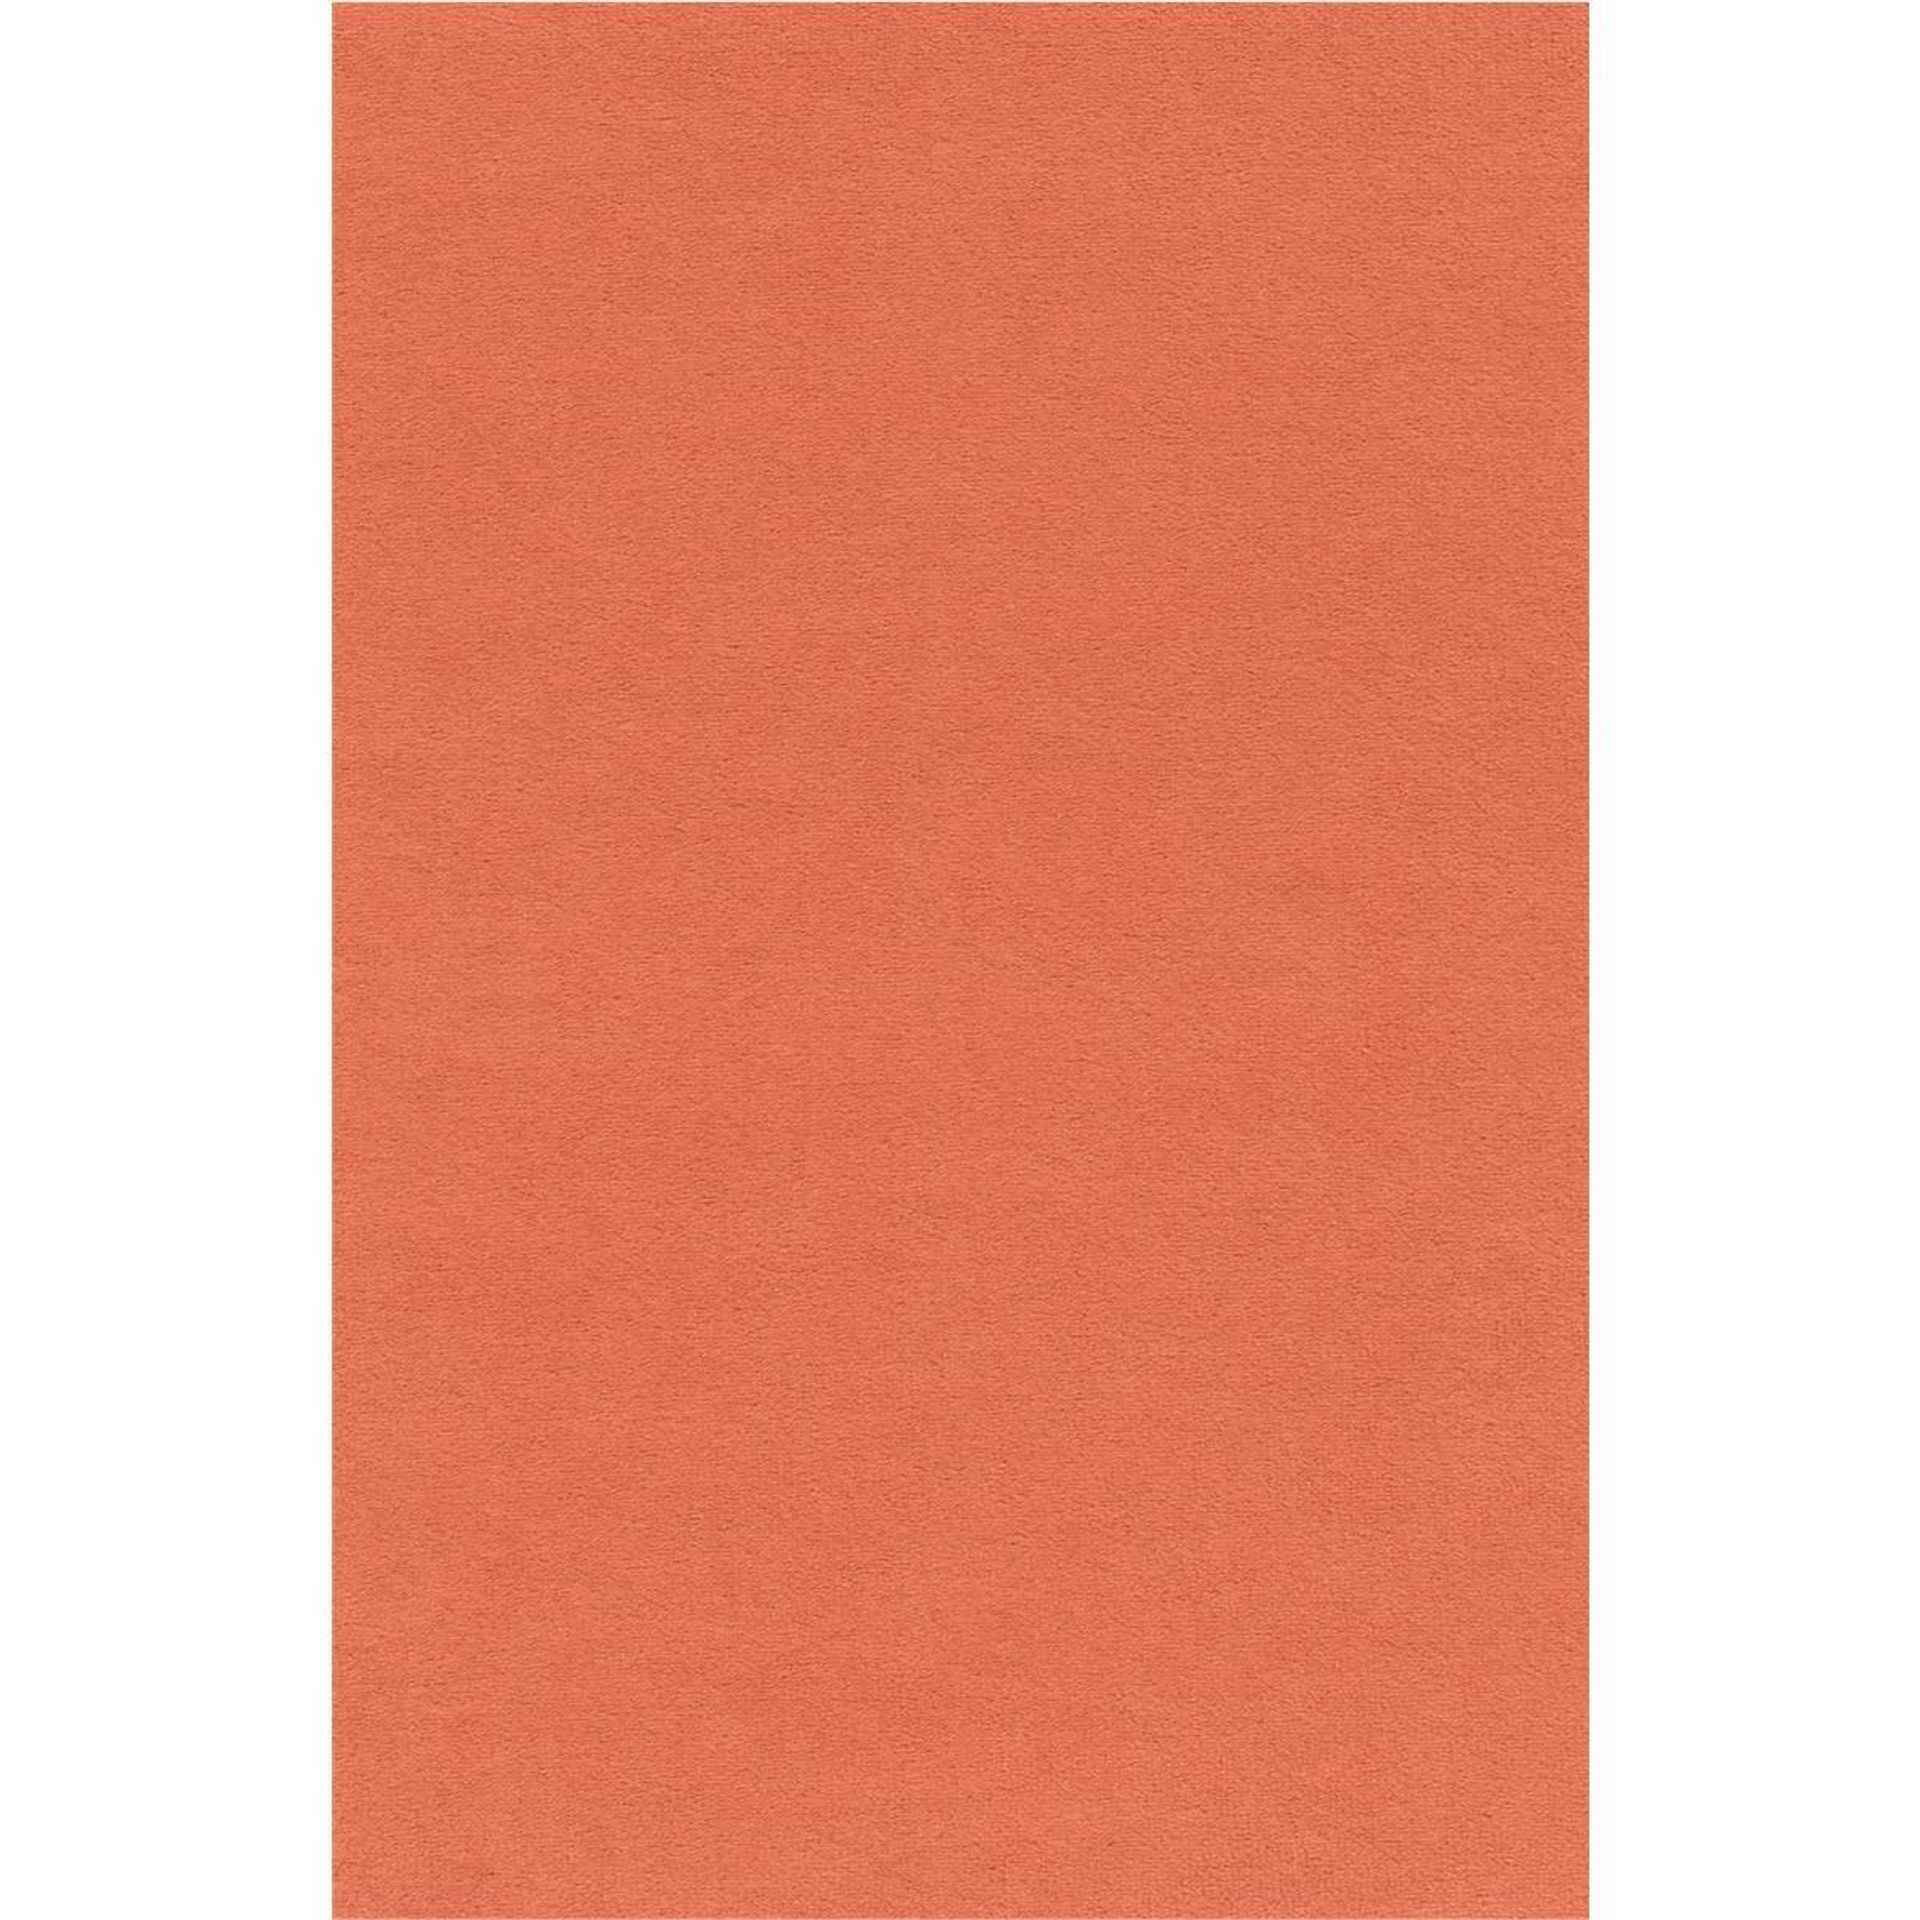 Velours Orange 400 | 1000 Teppichboden Vorwerk 1P00 | Orange Rollenbreite - 400 TB17-MODENA-Rolle-1P00-400cm Passion cm | MODENA 1P00